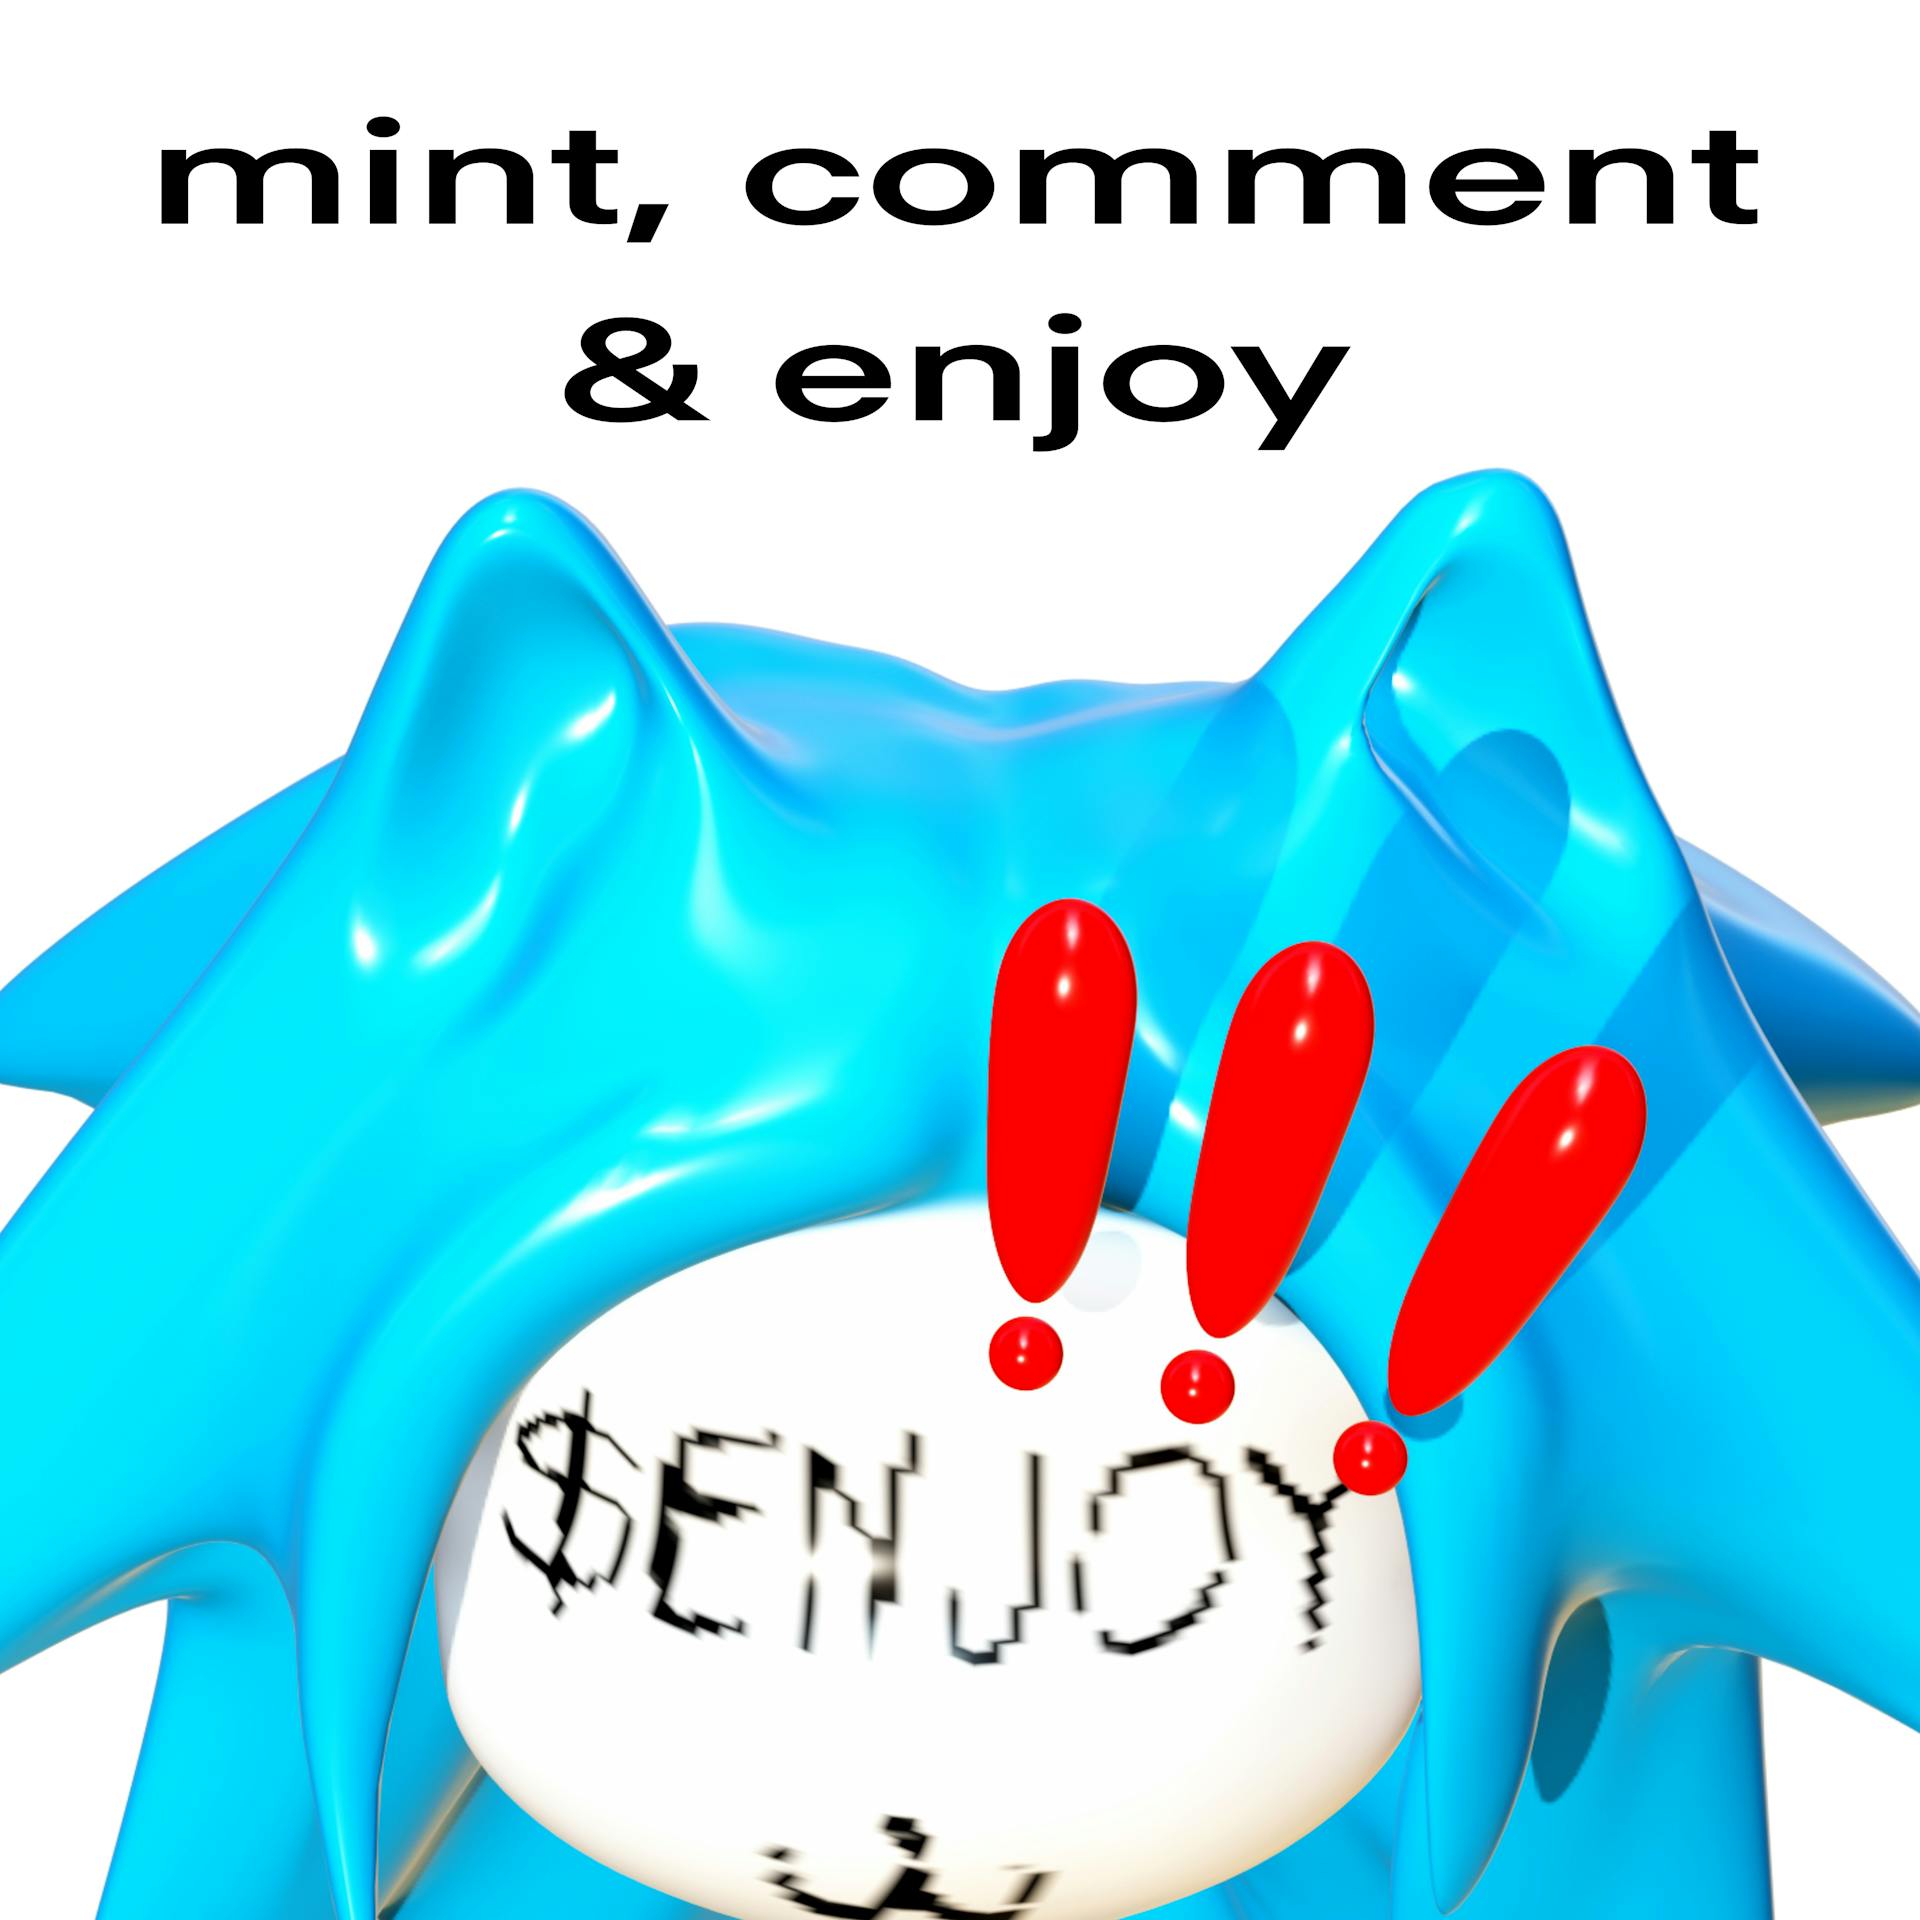 mint, comment & enjoy